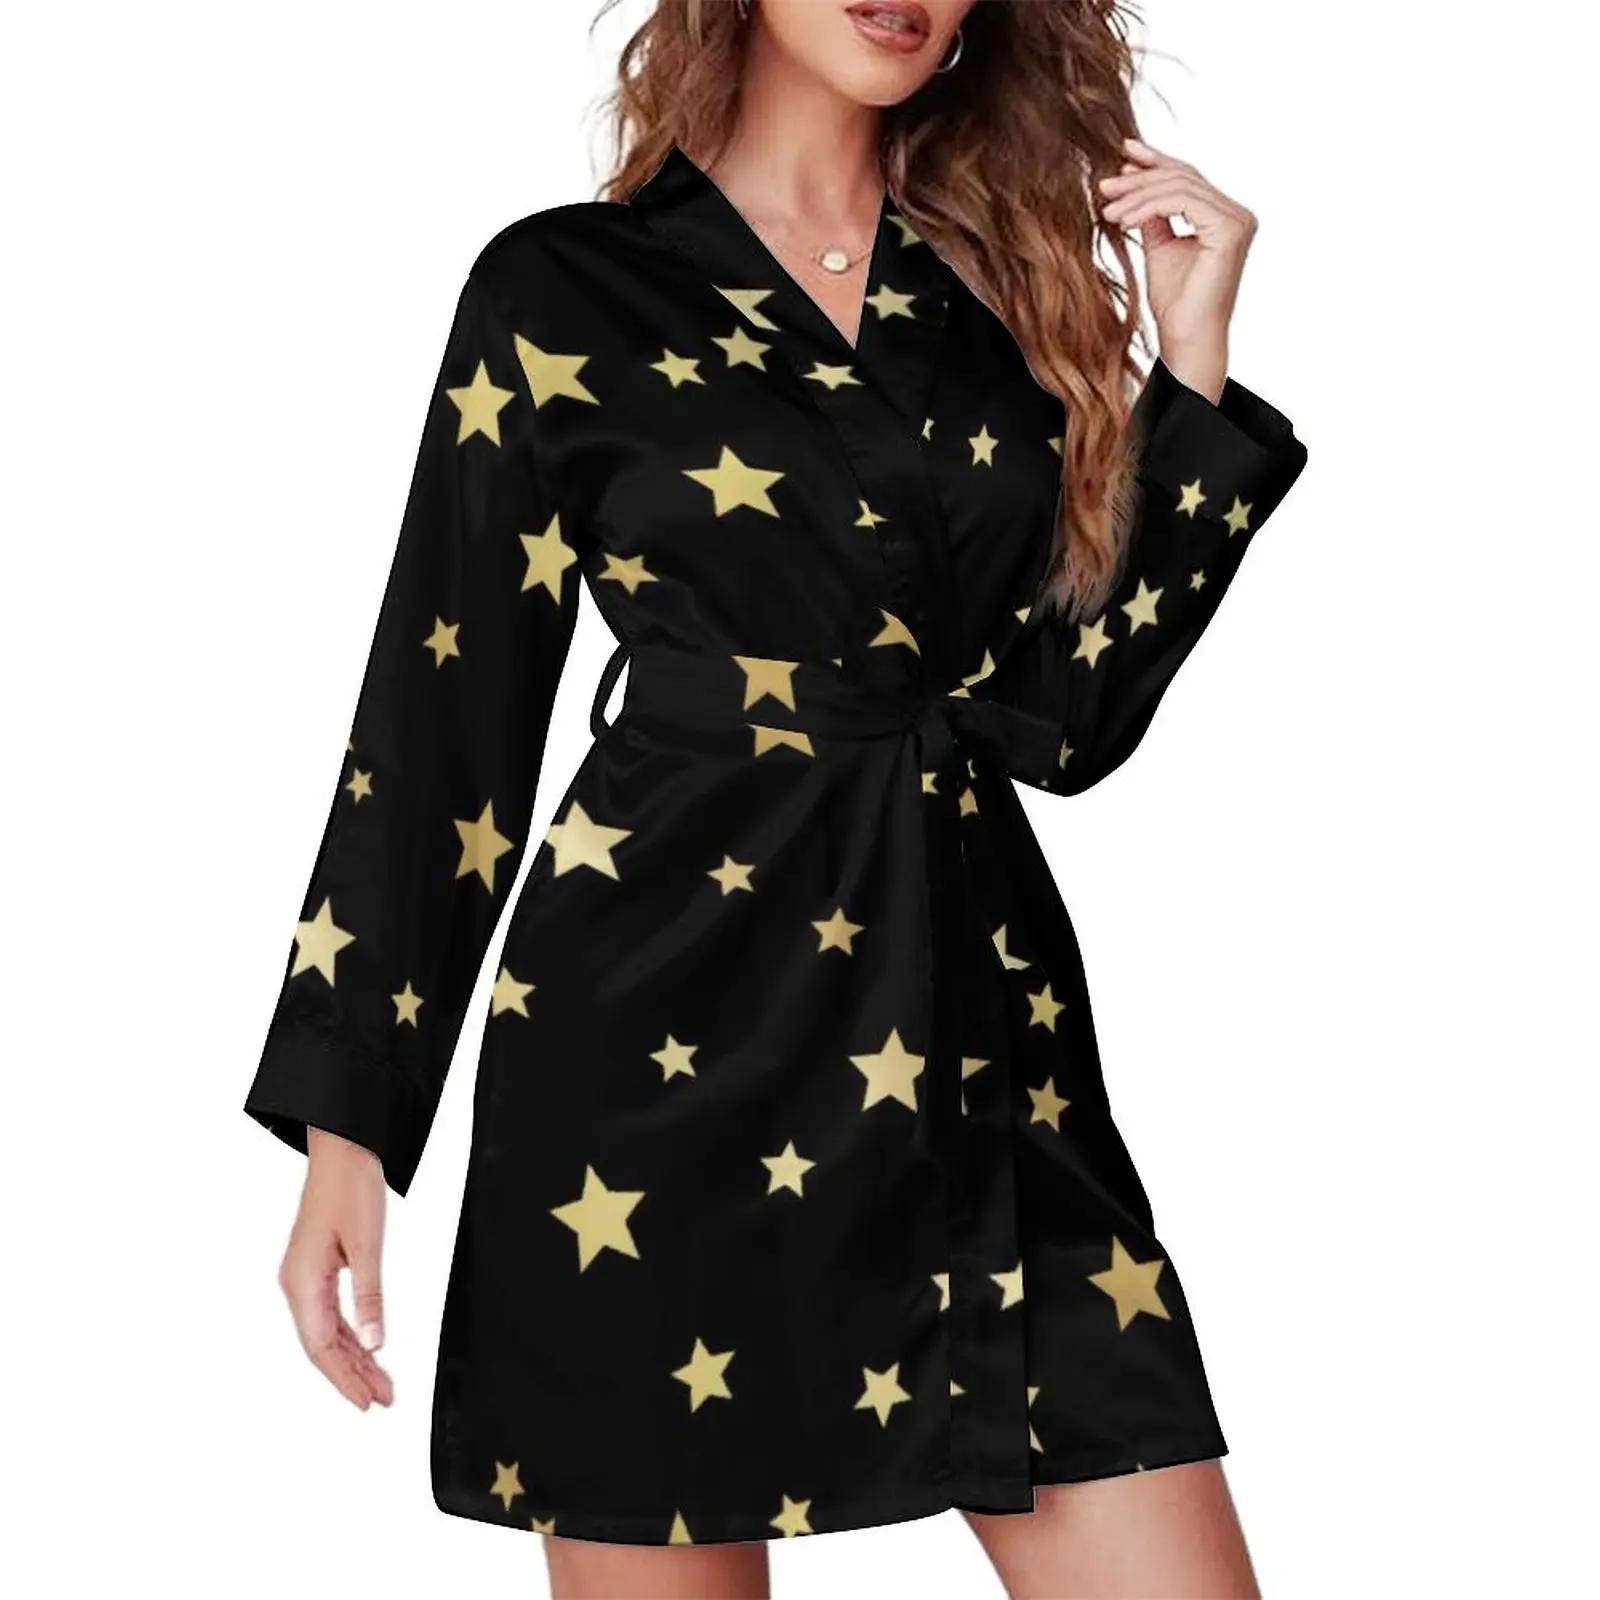 

Пижамный халат с золотыми звездами, милые повседневные пижамные халаты с длинным рукавом и принтом звезд, женская одежда для сна в стиле ретро с V-образным вырезом, Осенние графические платья